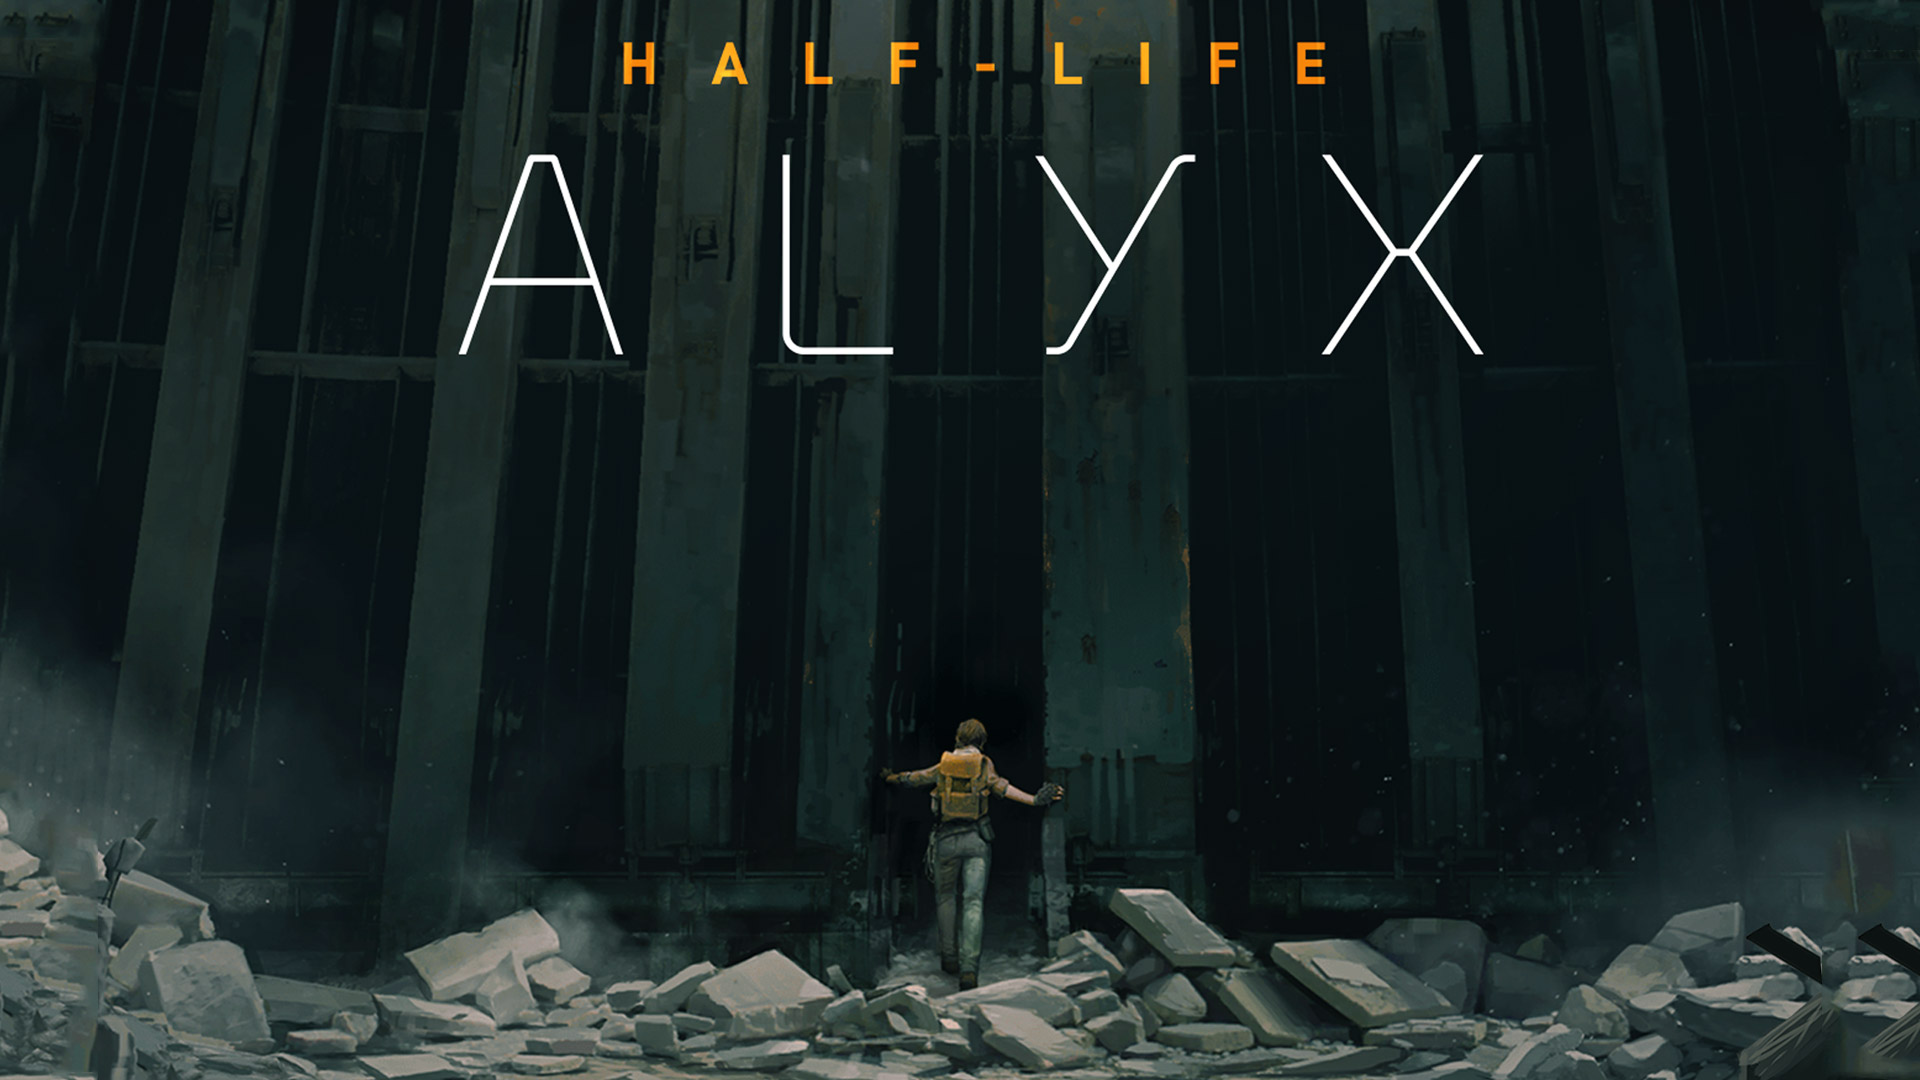 แฟนเกมชาวไทยเตรียมเฮ ! เกม Half-Life : Alyx ทำการอัปเดตซับไตเติลภาษาไทยเข้าสู่ตัวเกม